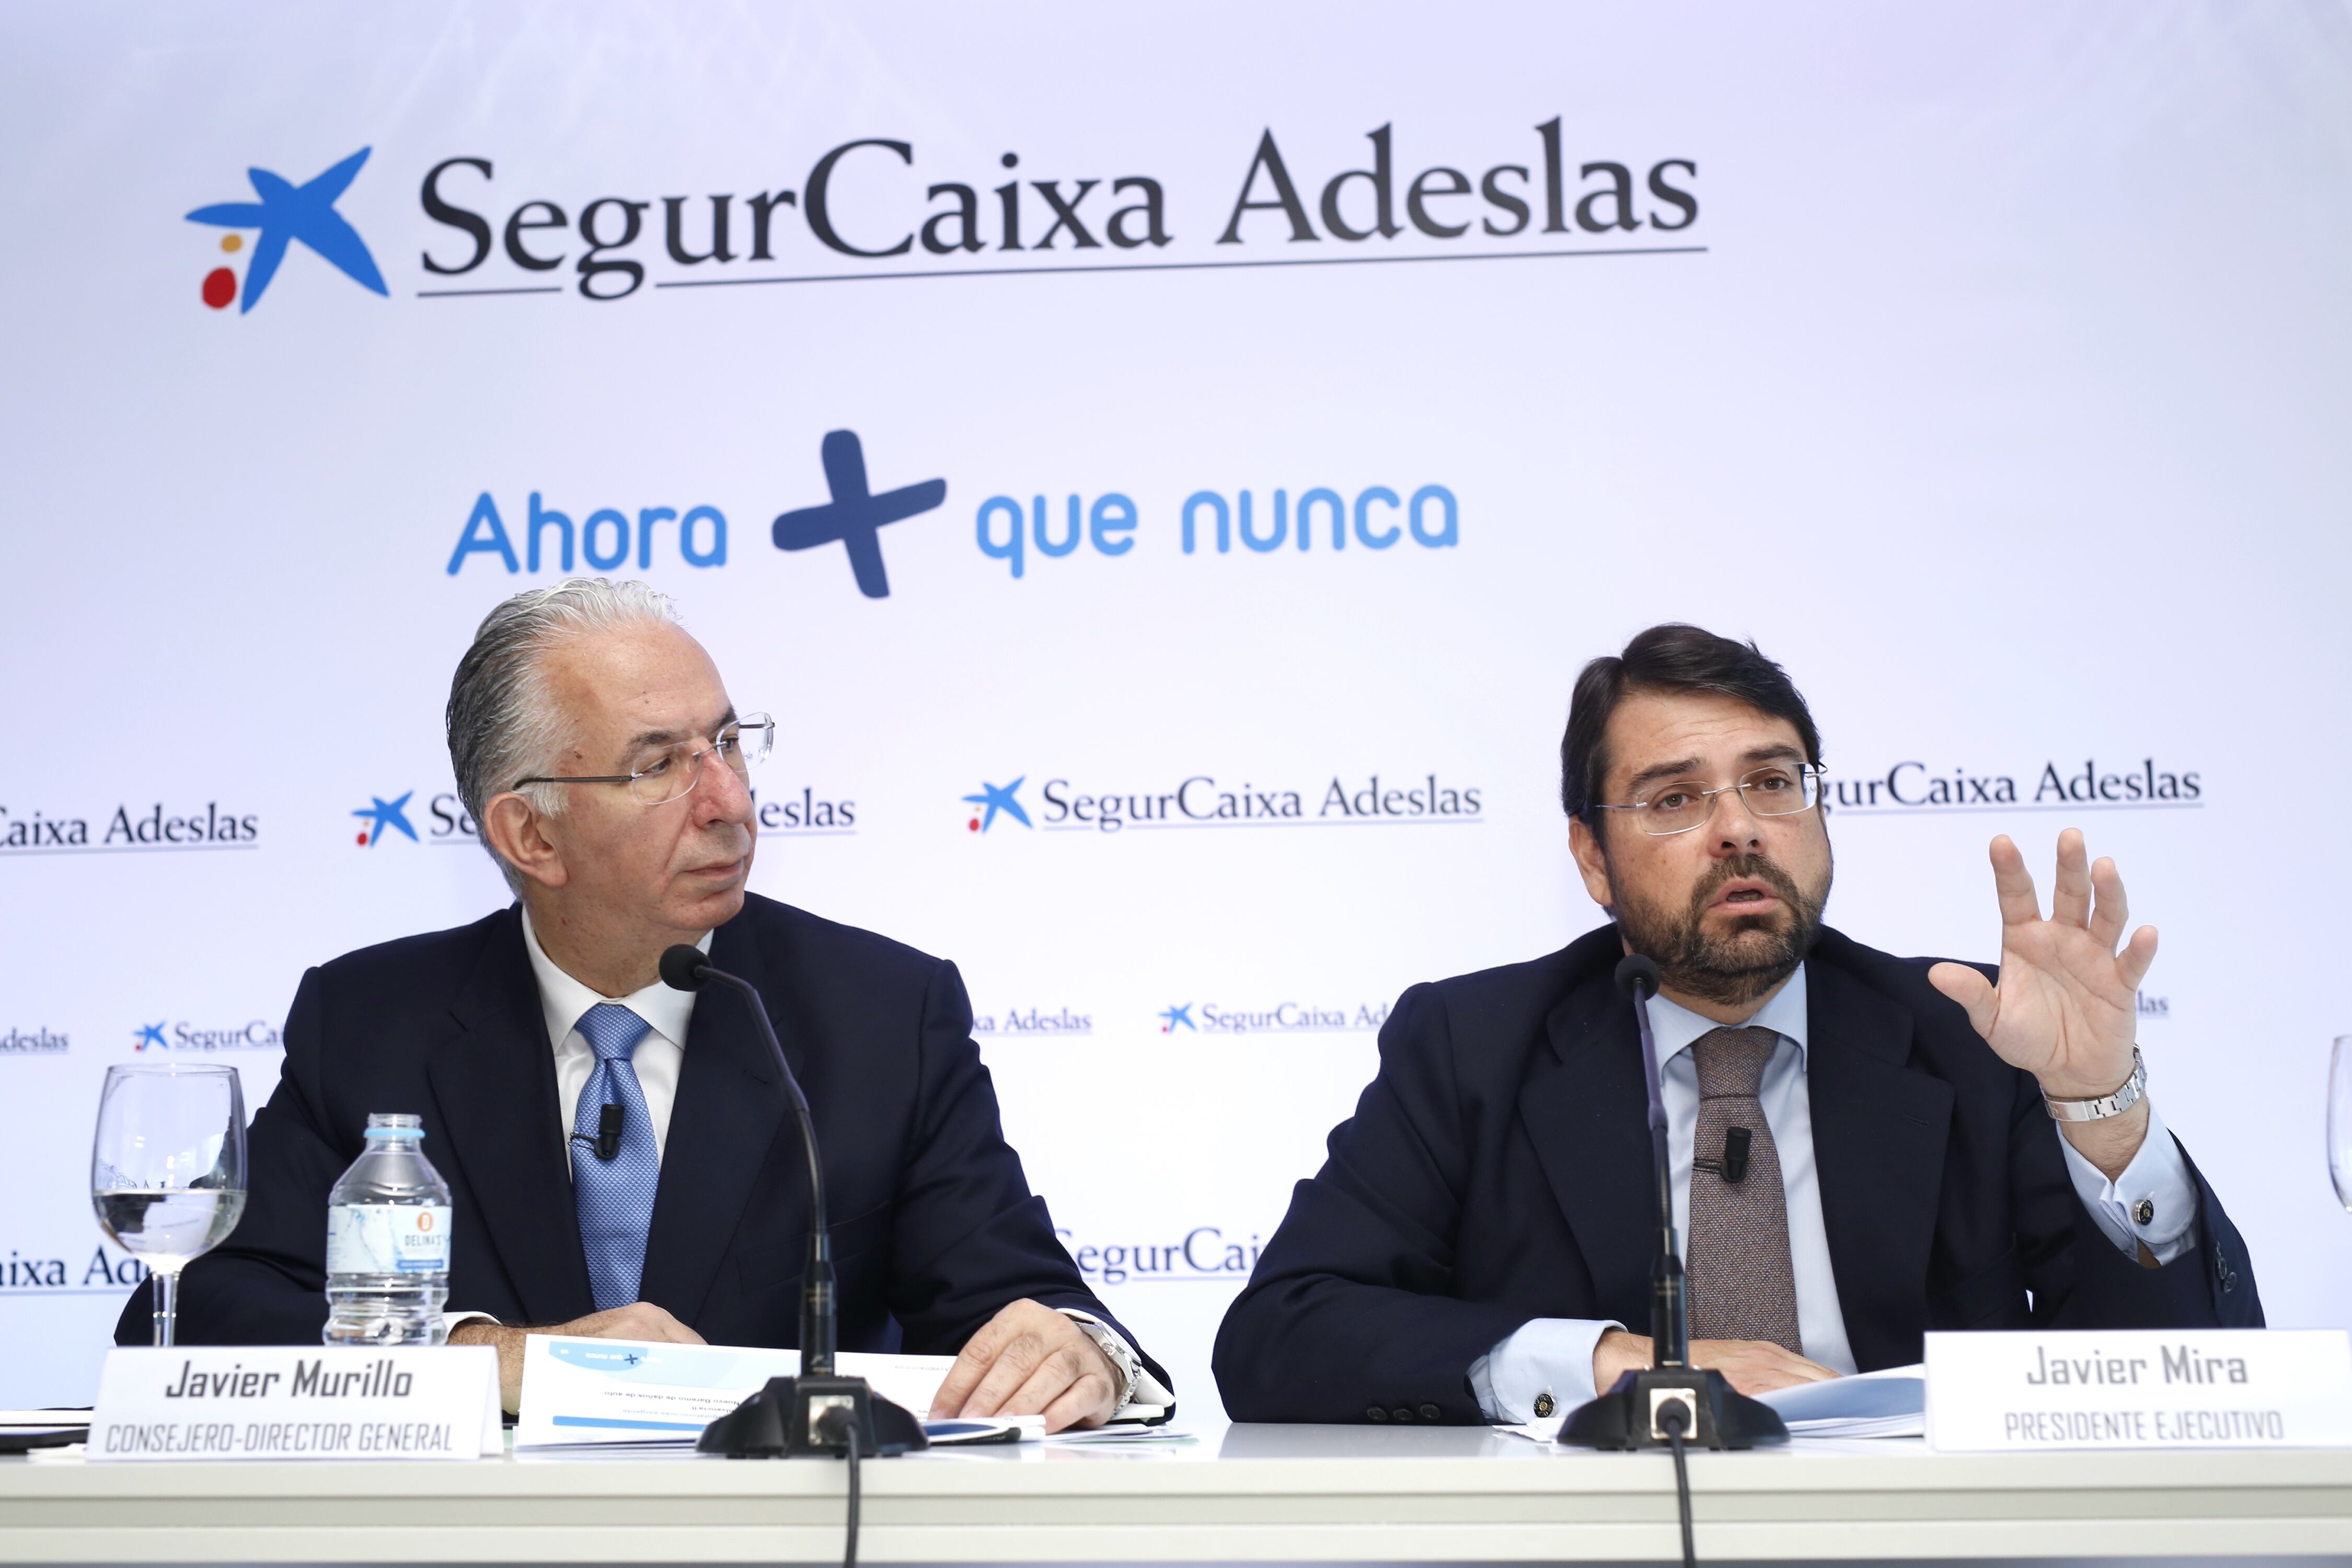 El director general de SegurCaixa Adeslas, Javier Murillo y el presidente Javier Mira